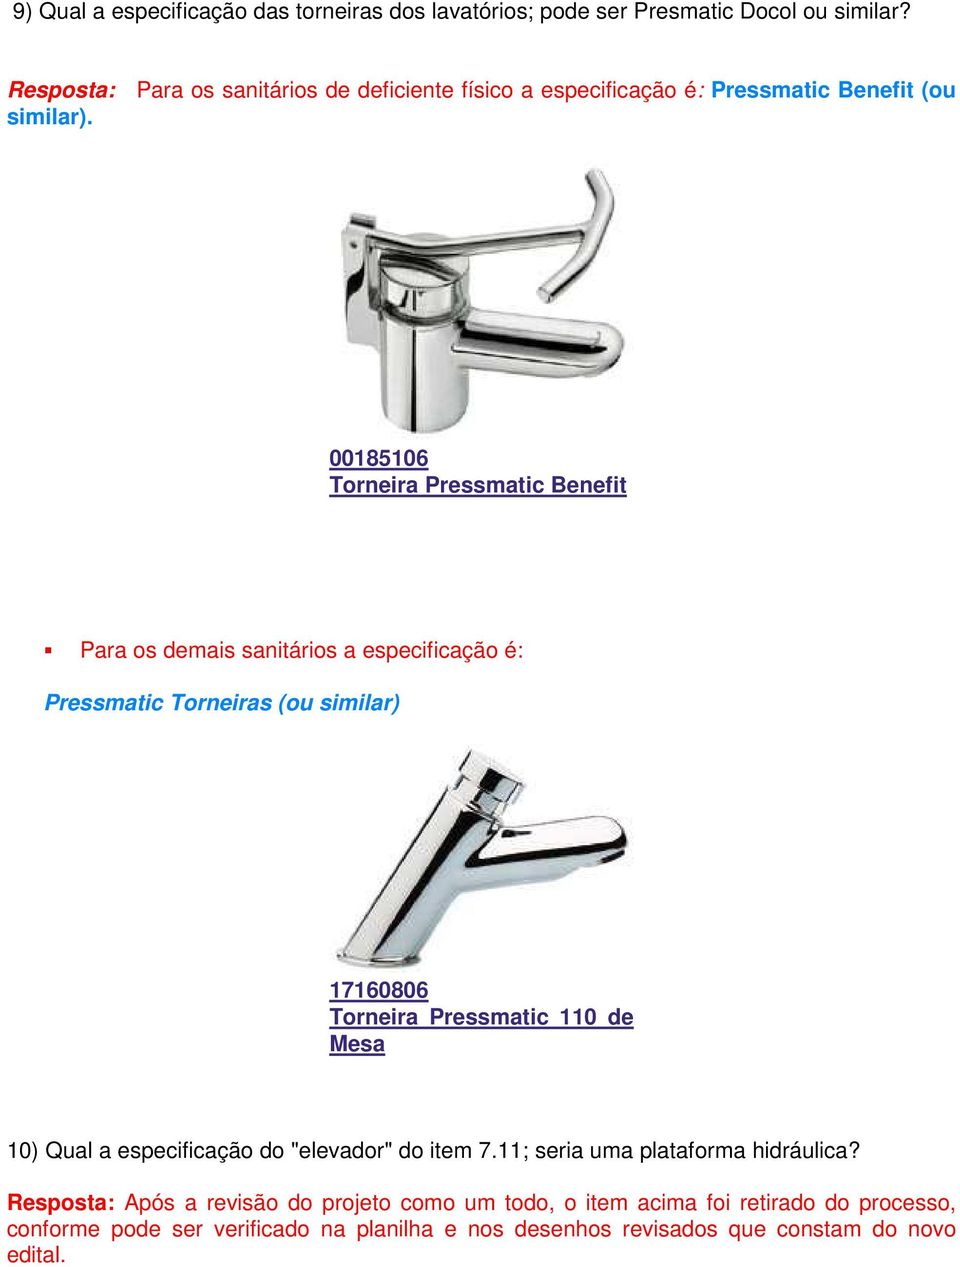 00185106 Torneira Pressmatic Benefit Para os demais sanitários a especificação é: Pressmatic Torneiras (ou similar) 17160806